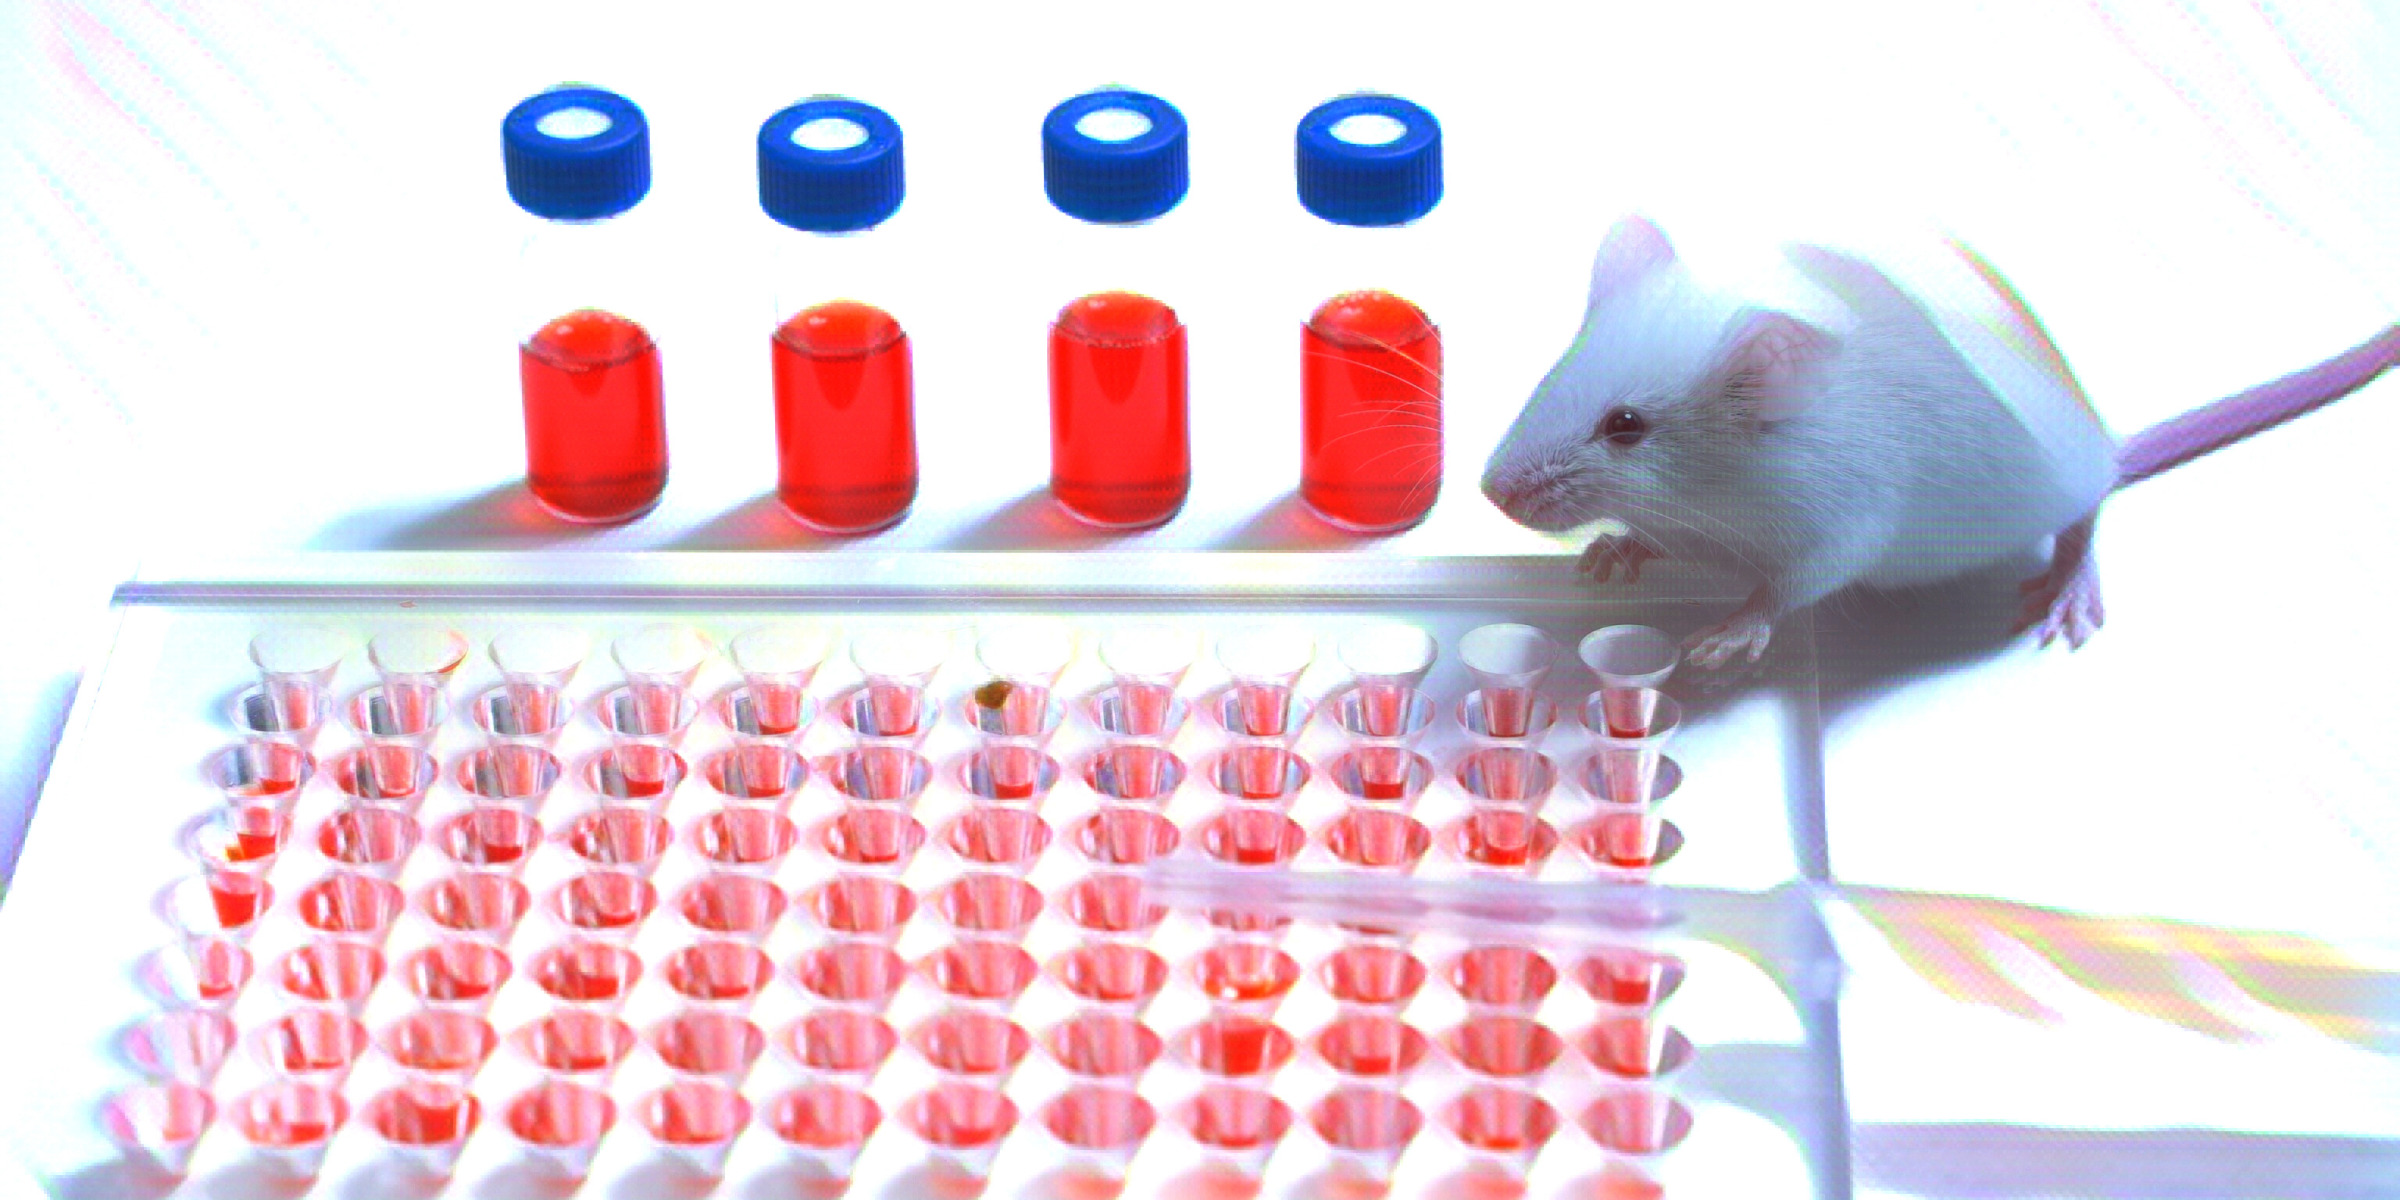 ネズミと実験の道具